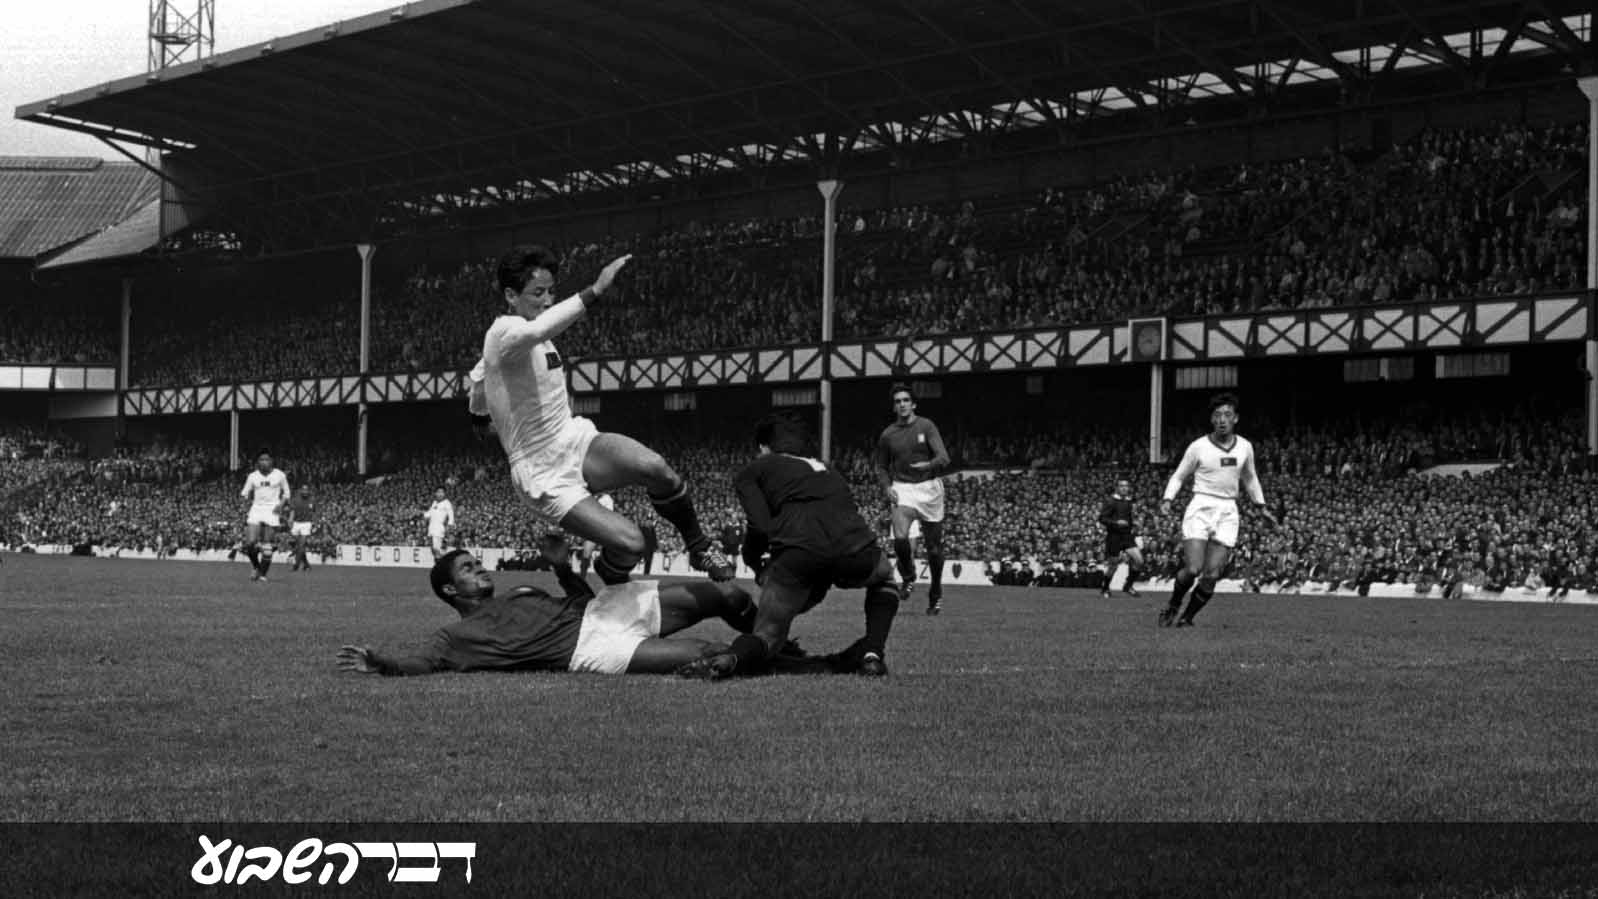 נבחרת קוריאה הצפונית במשחק רבע גמר מונדיאל 1966 מול פורטוגל. 23 ביולי (Photo by Central Press/Getty Images IL)